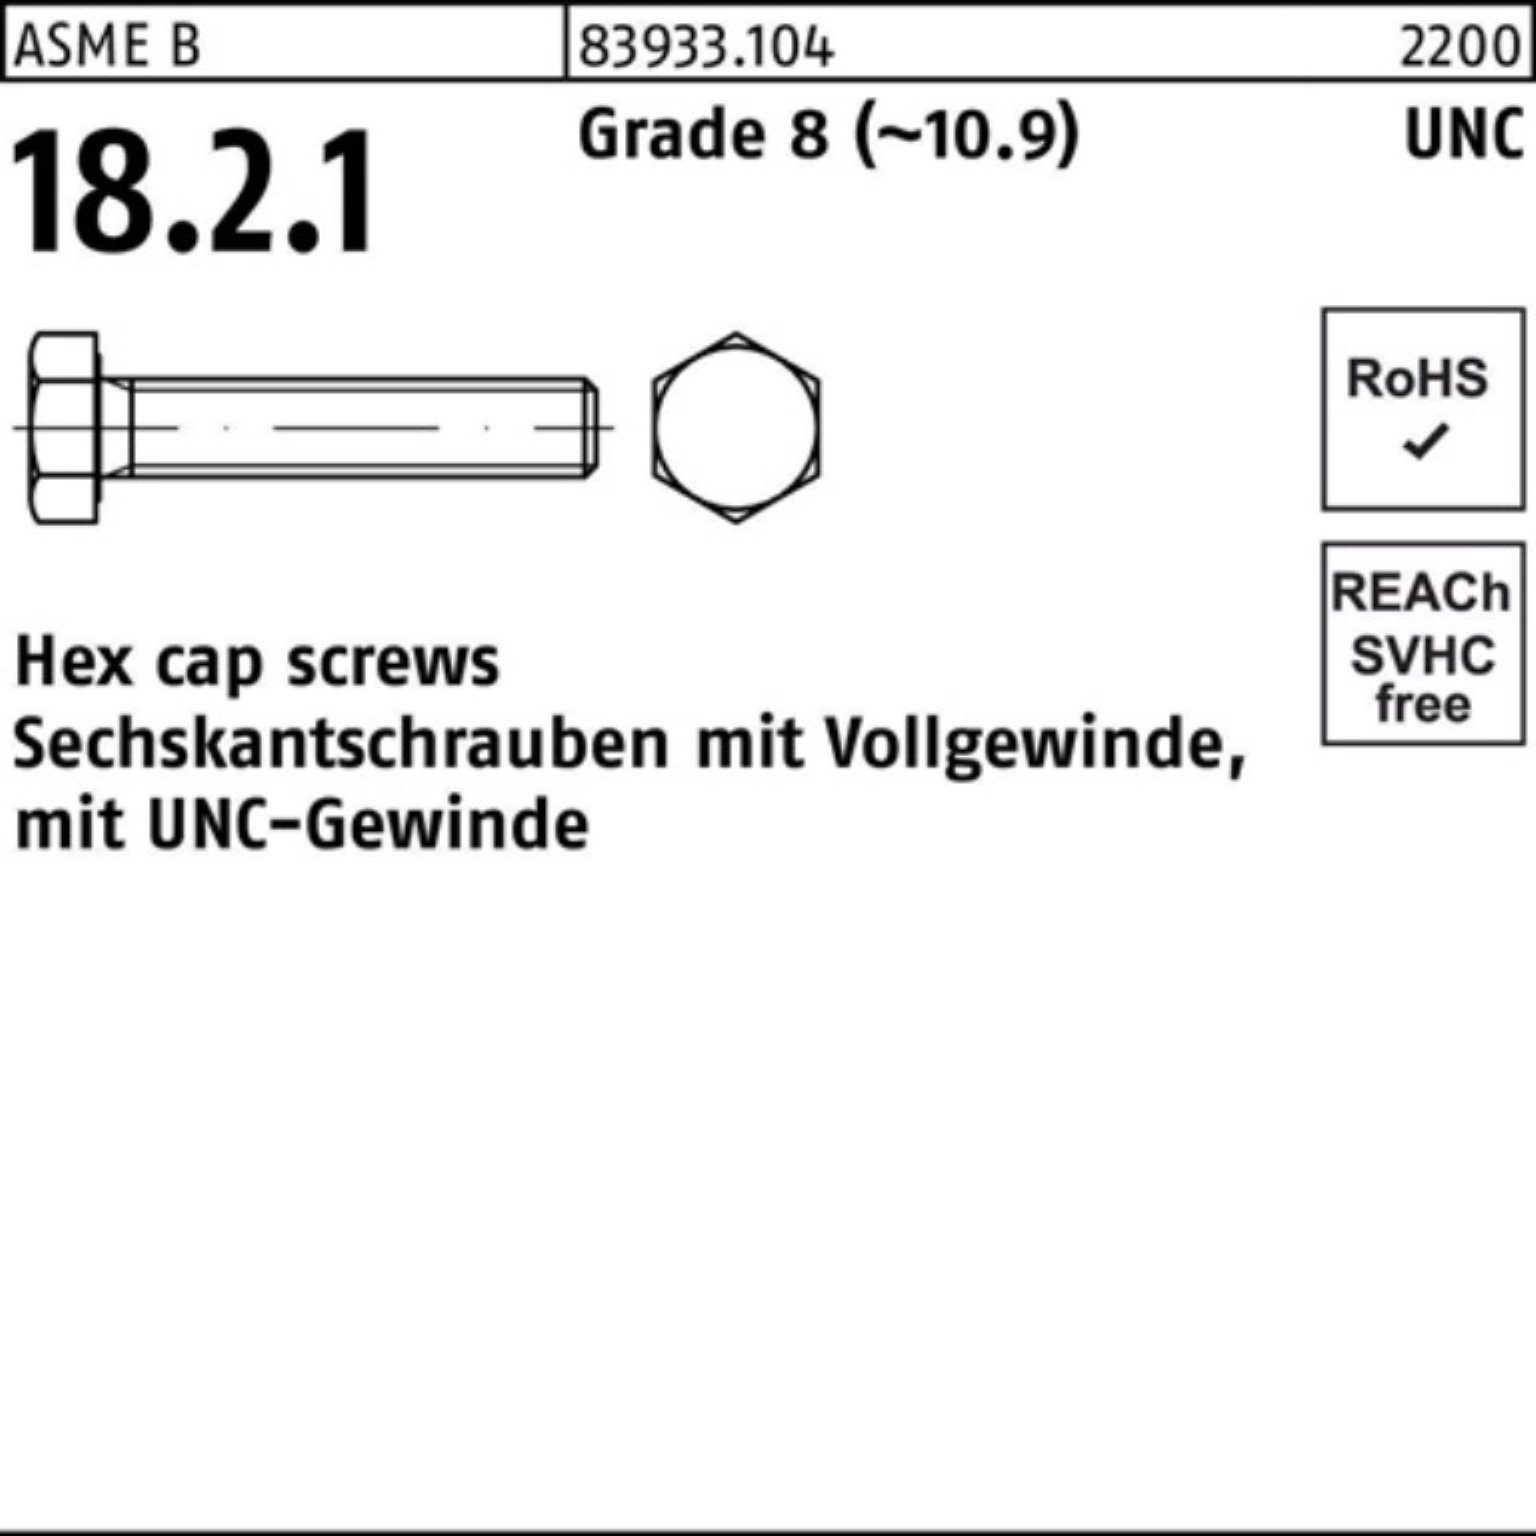 Reyher Sechskantschraube 100er Pack Sechskantschraube R 83933 UNC-Gewinde VG 1x 3 Grade 8 (10.